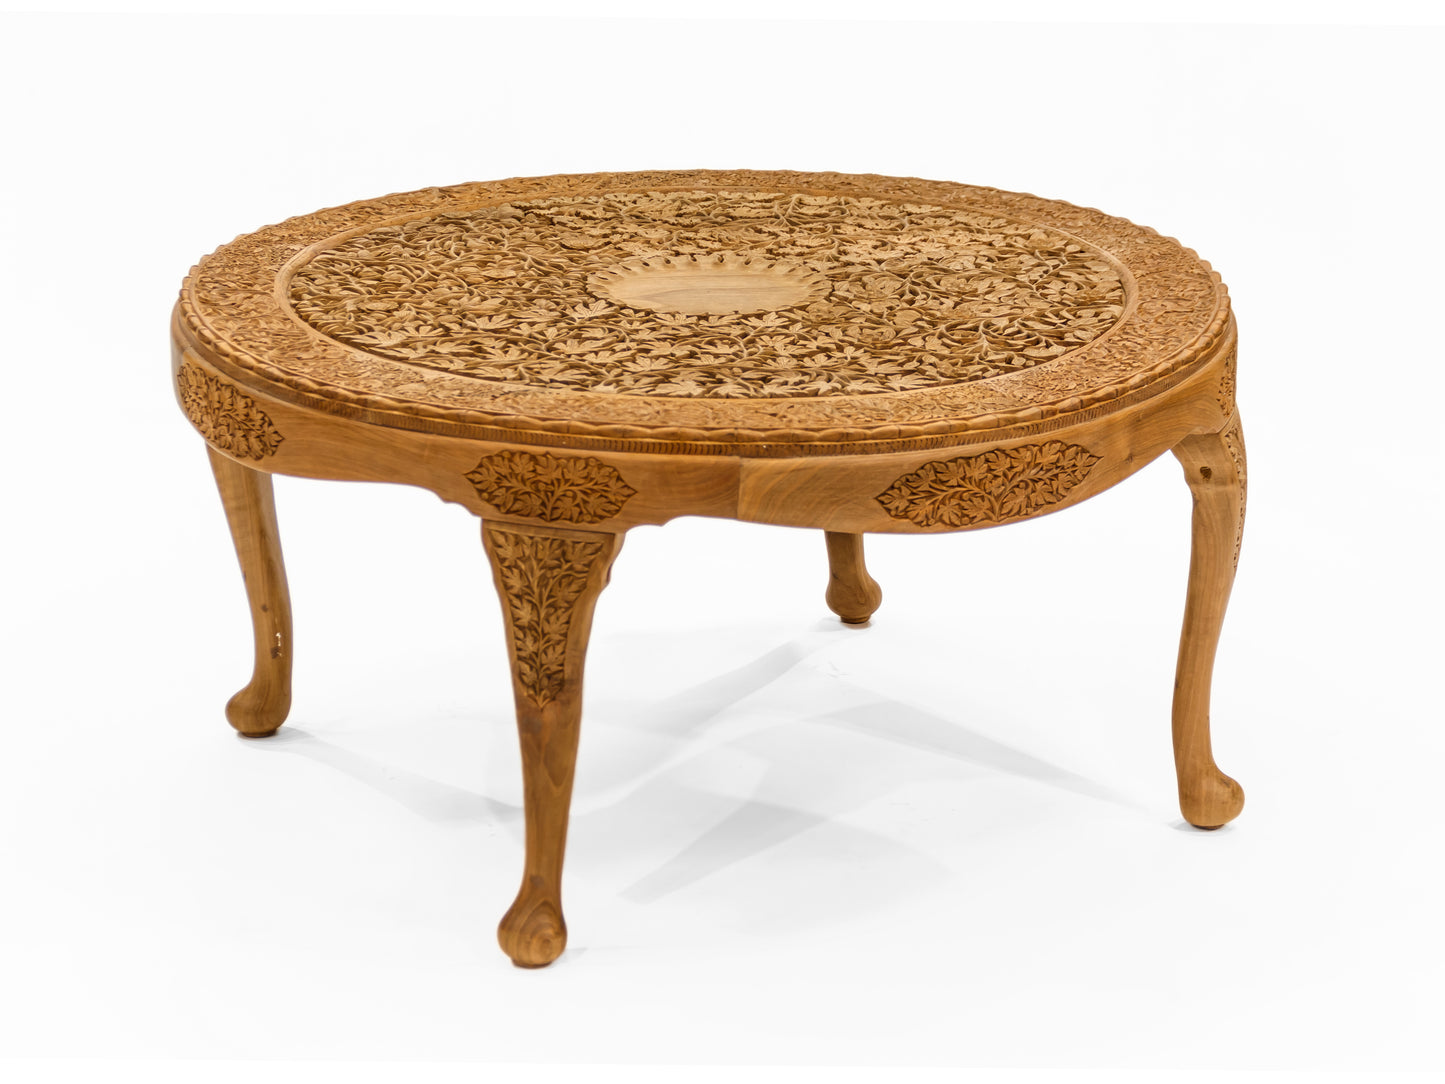 Handmade Walnut Table "4 seasons" product image #29720065048746